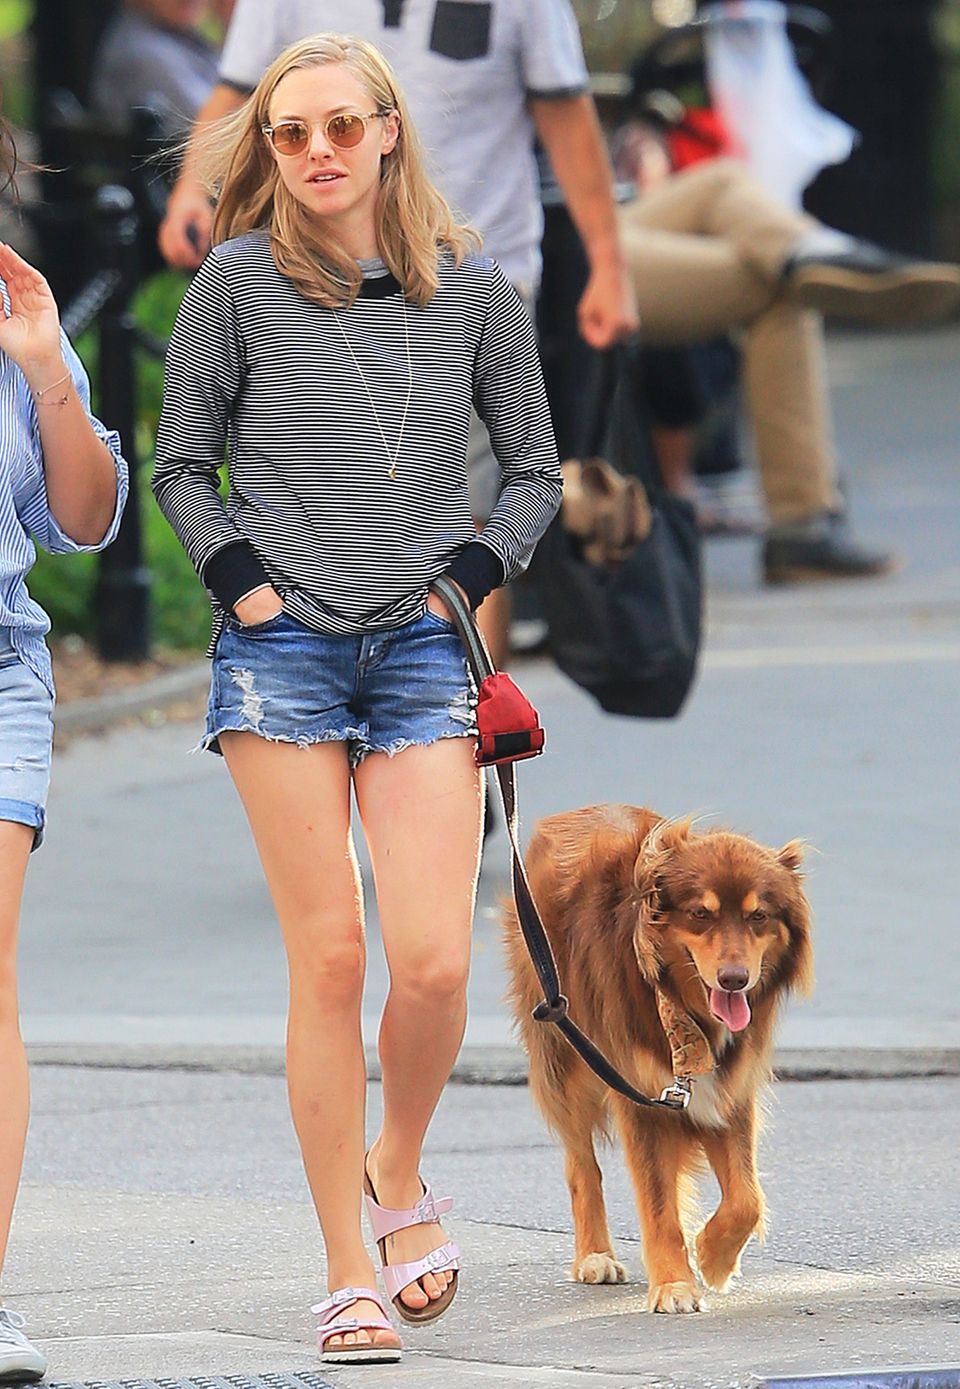 Auch wenn es Hund Finn vermutlich ziemlich egal ist, wie sein Frauchen aussieht, trägt Amanda Seyfried beim Gassigehen eine tolle Kombination aus Jeans-Shorts und gestreiftem Sweatshirt.